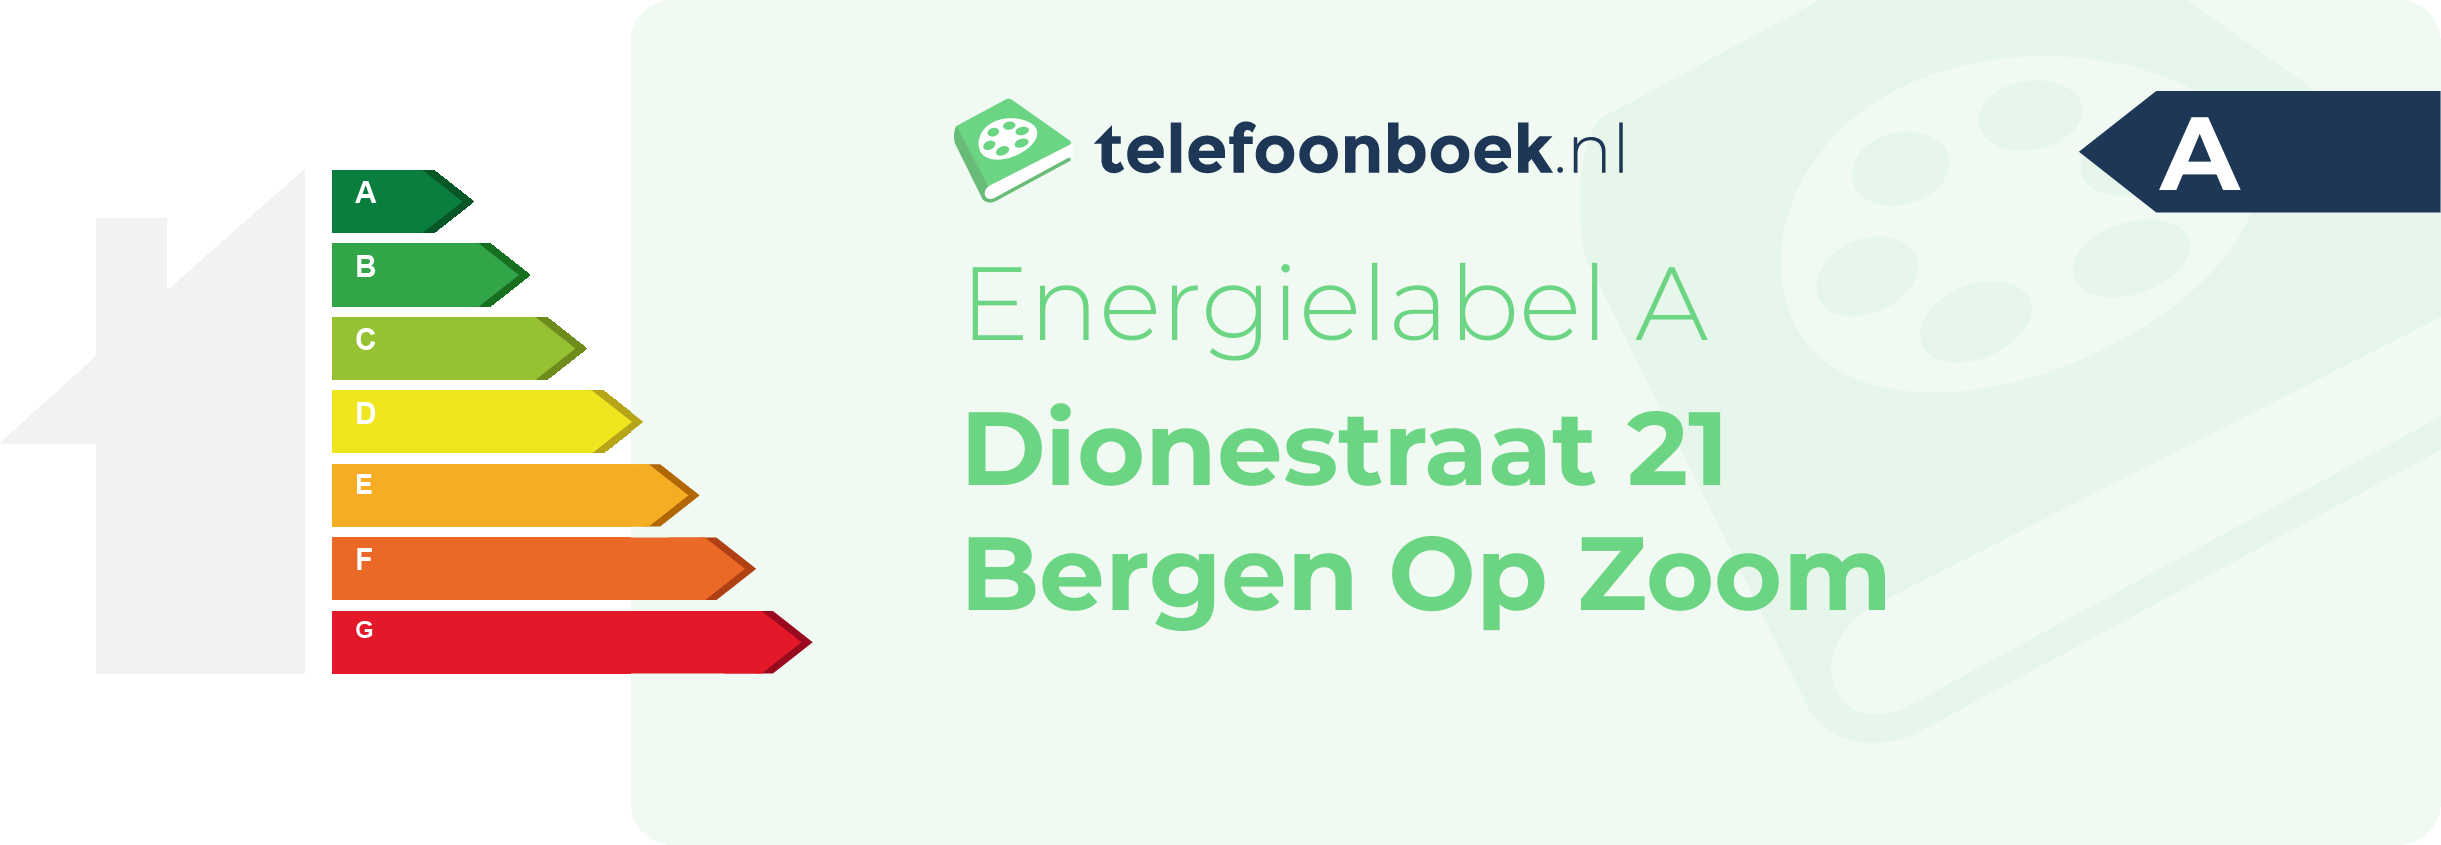 Energielabel Dionestraat 21 Bergen Op Zoom